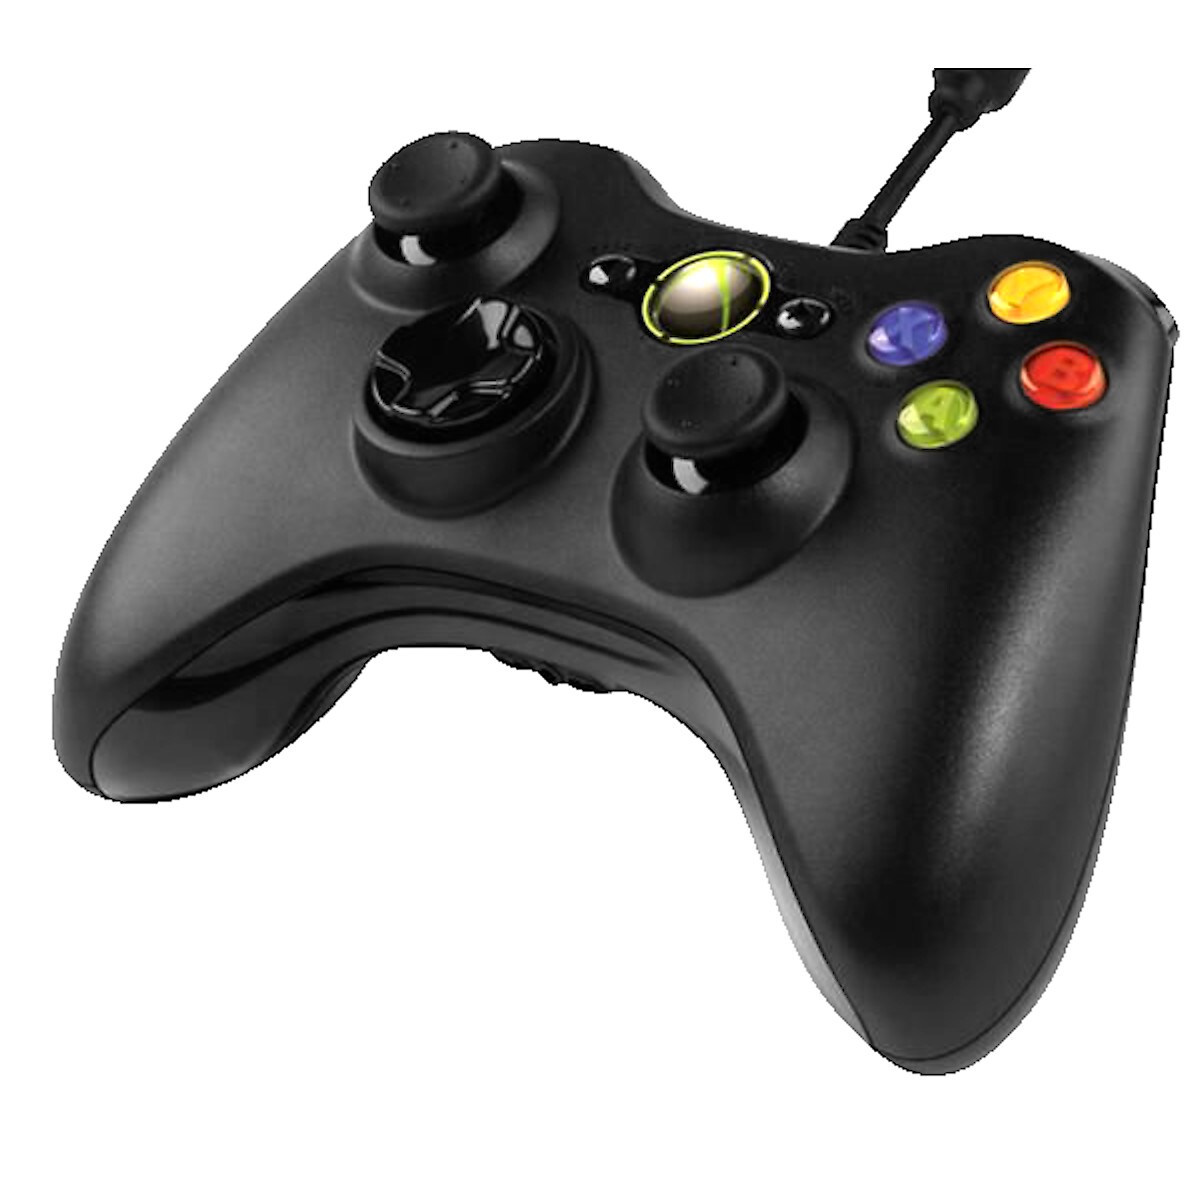 Trådlös handkontroll för PC och Xbox 360, Microsoft